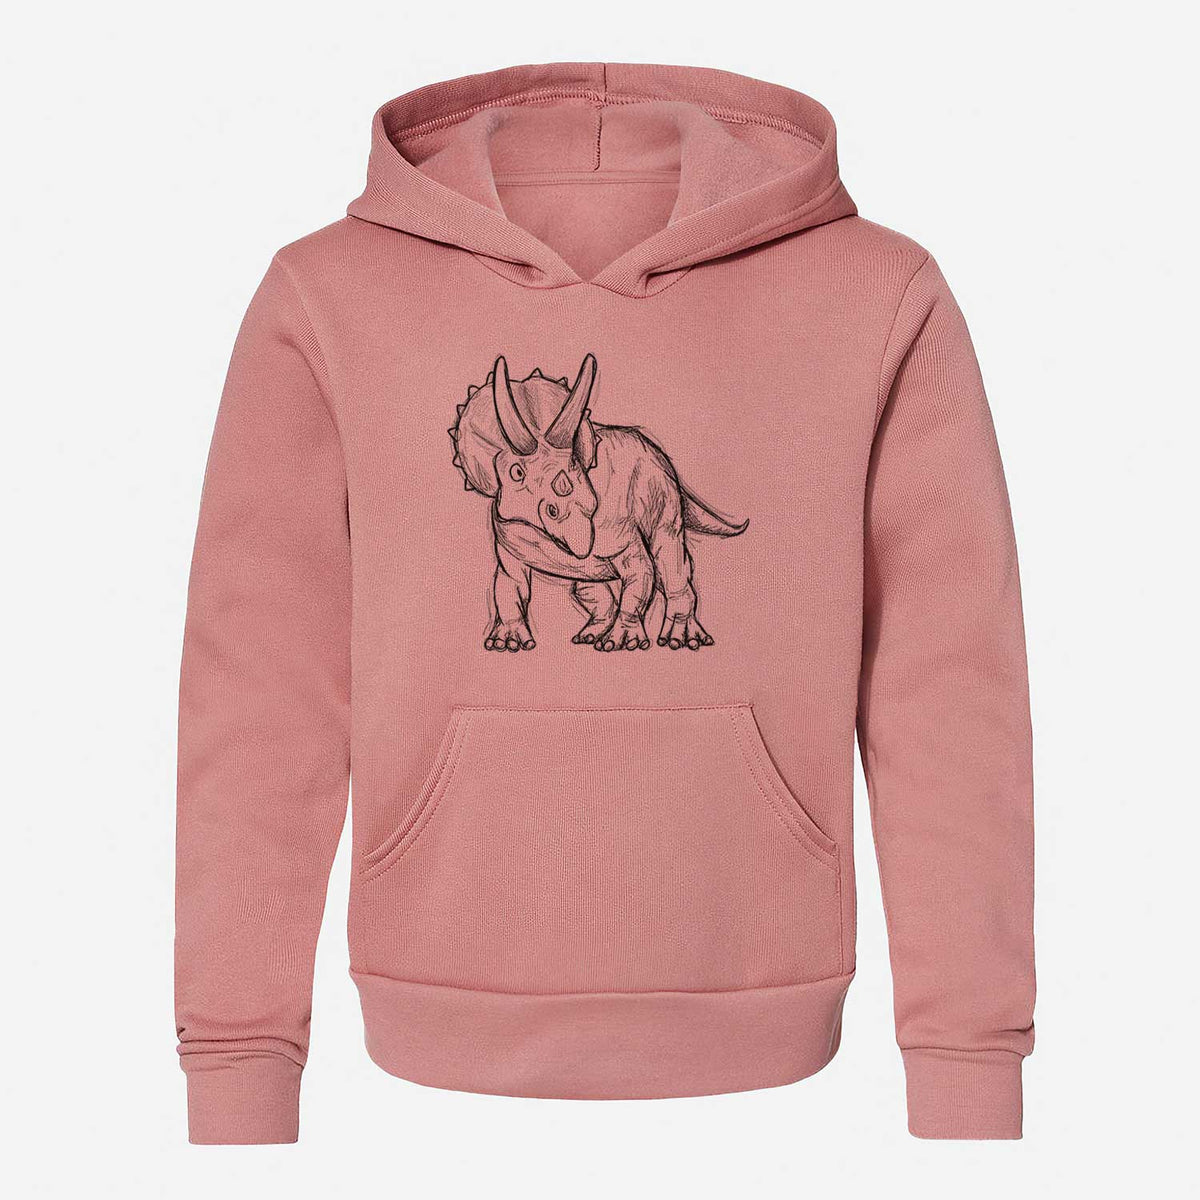 Triceratops Horridus - Youth Hoodie Sweatshirt